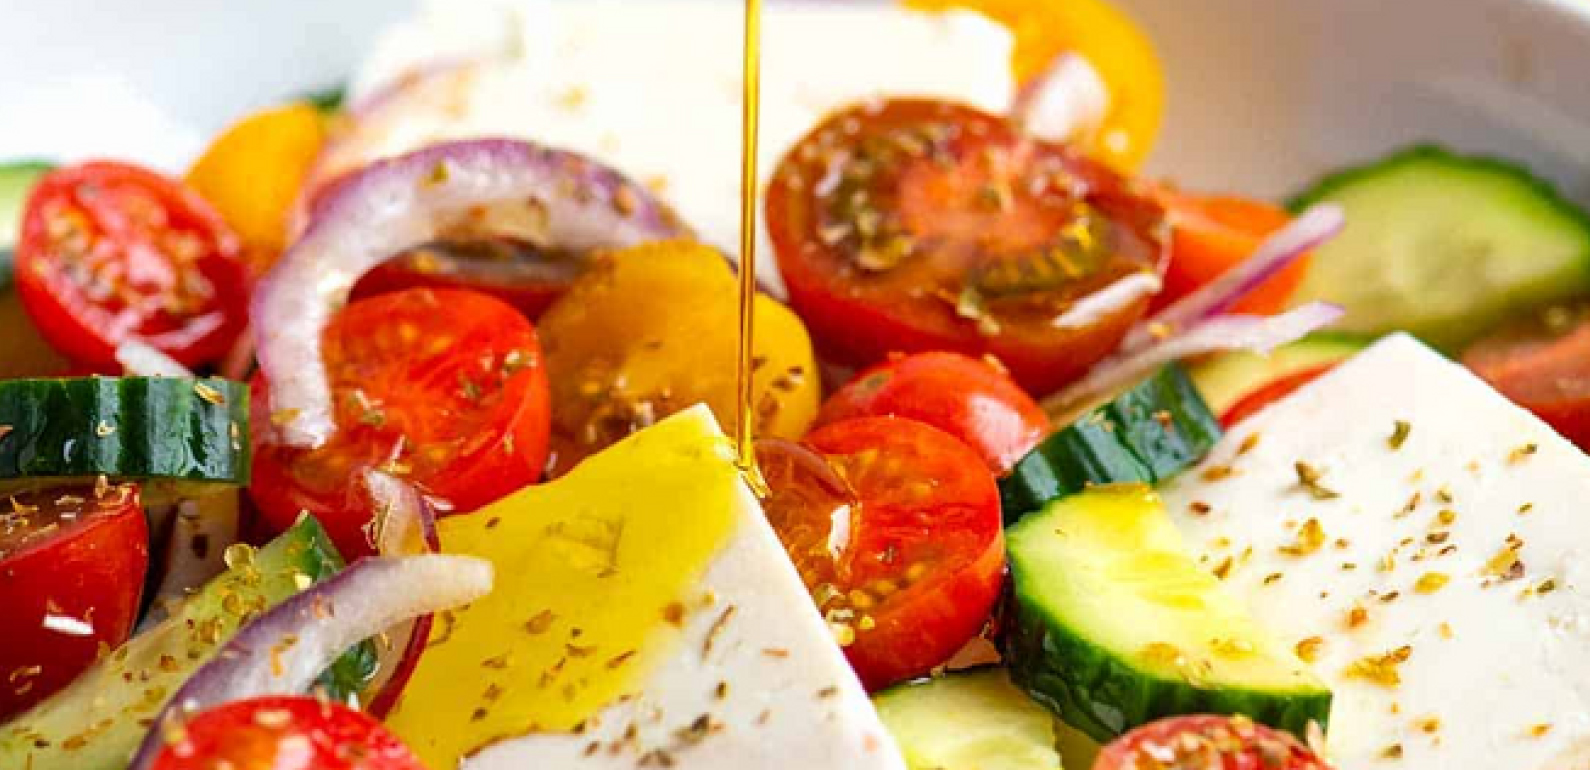 그리스 샐러드: 그리스 음식 레시피 - 올리브 오일을 사용한 크레타 요리법